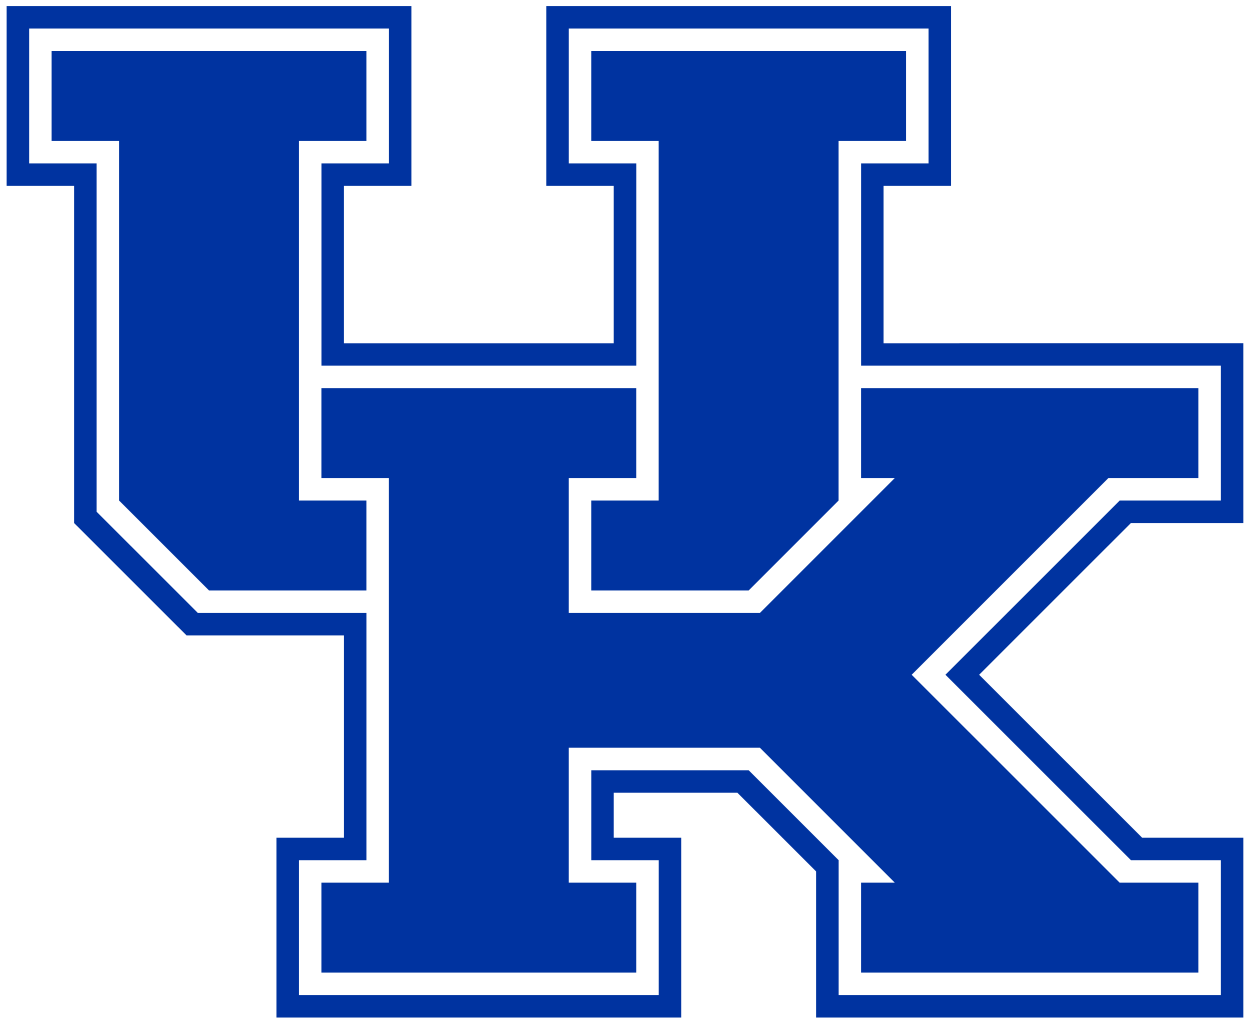 1252px-Kentucky_Wildcats_logo.svg